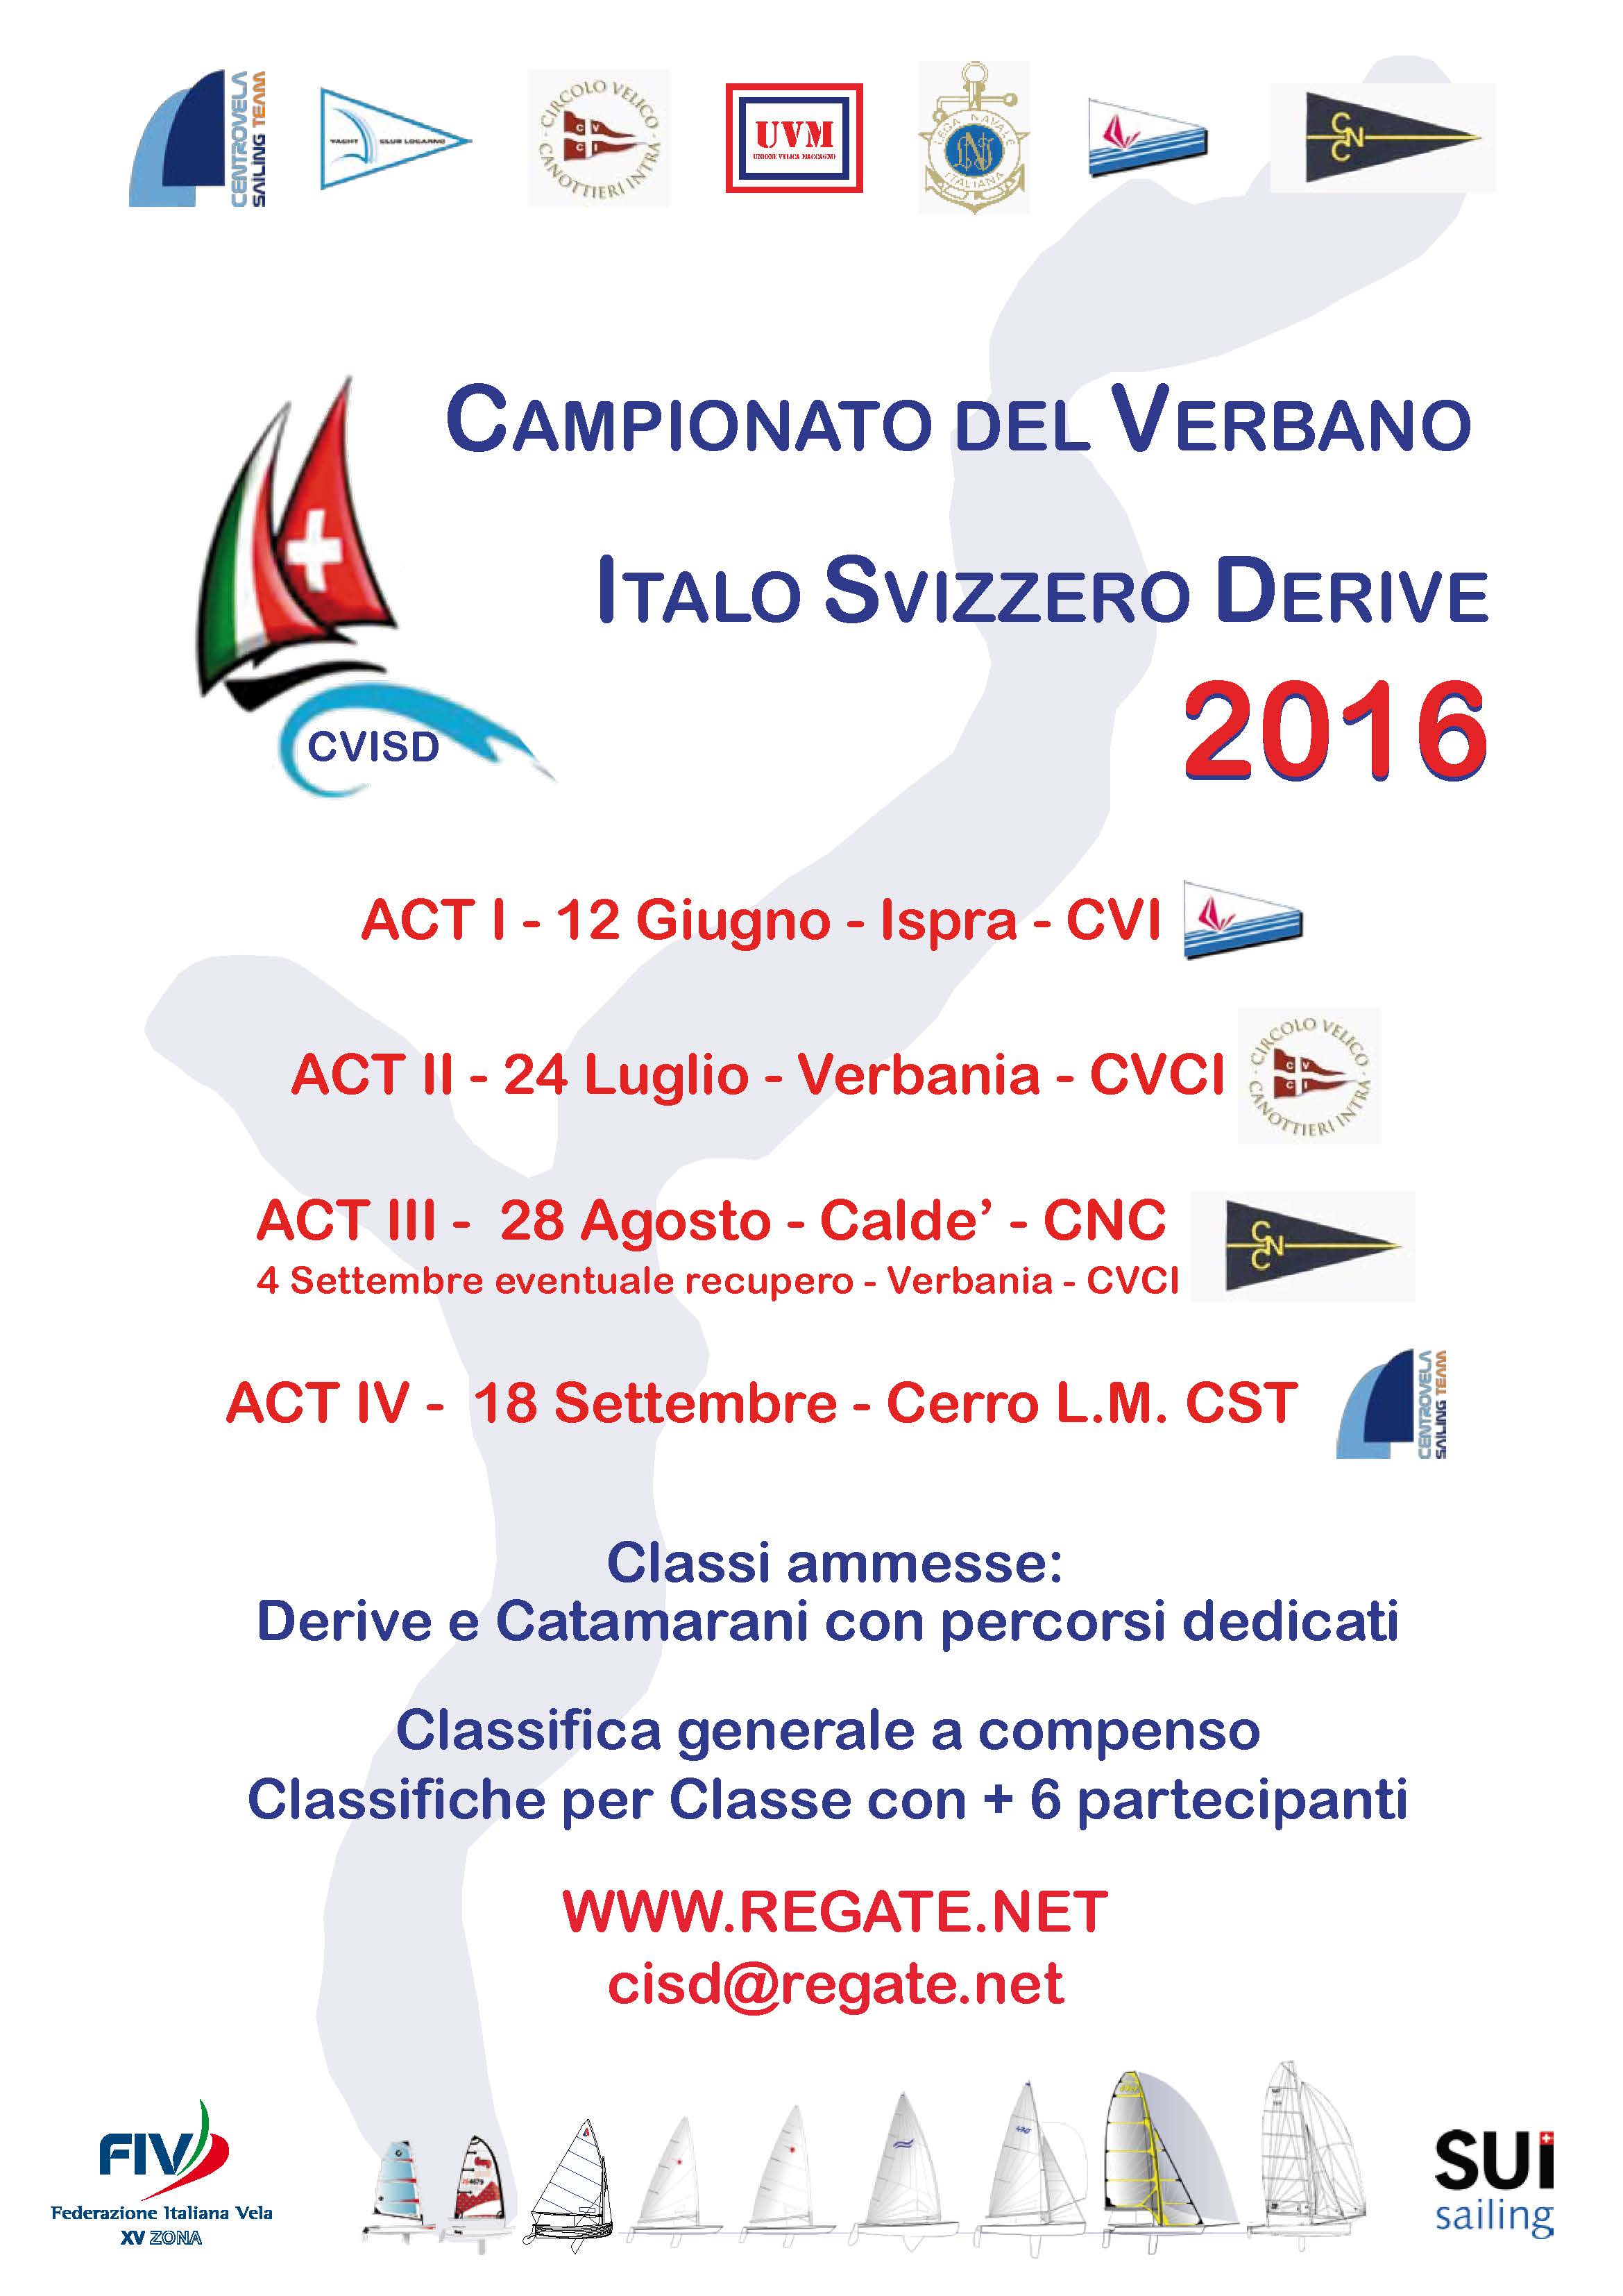 Campionato del Verbano Italo Svizzero derive